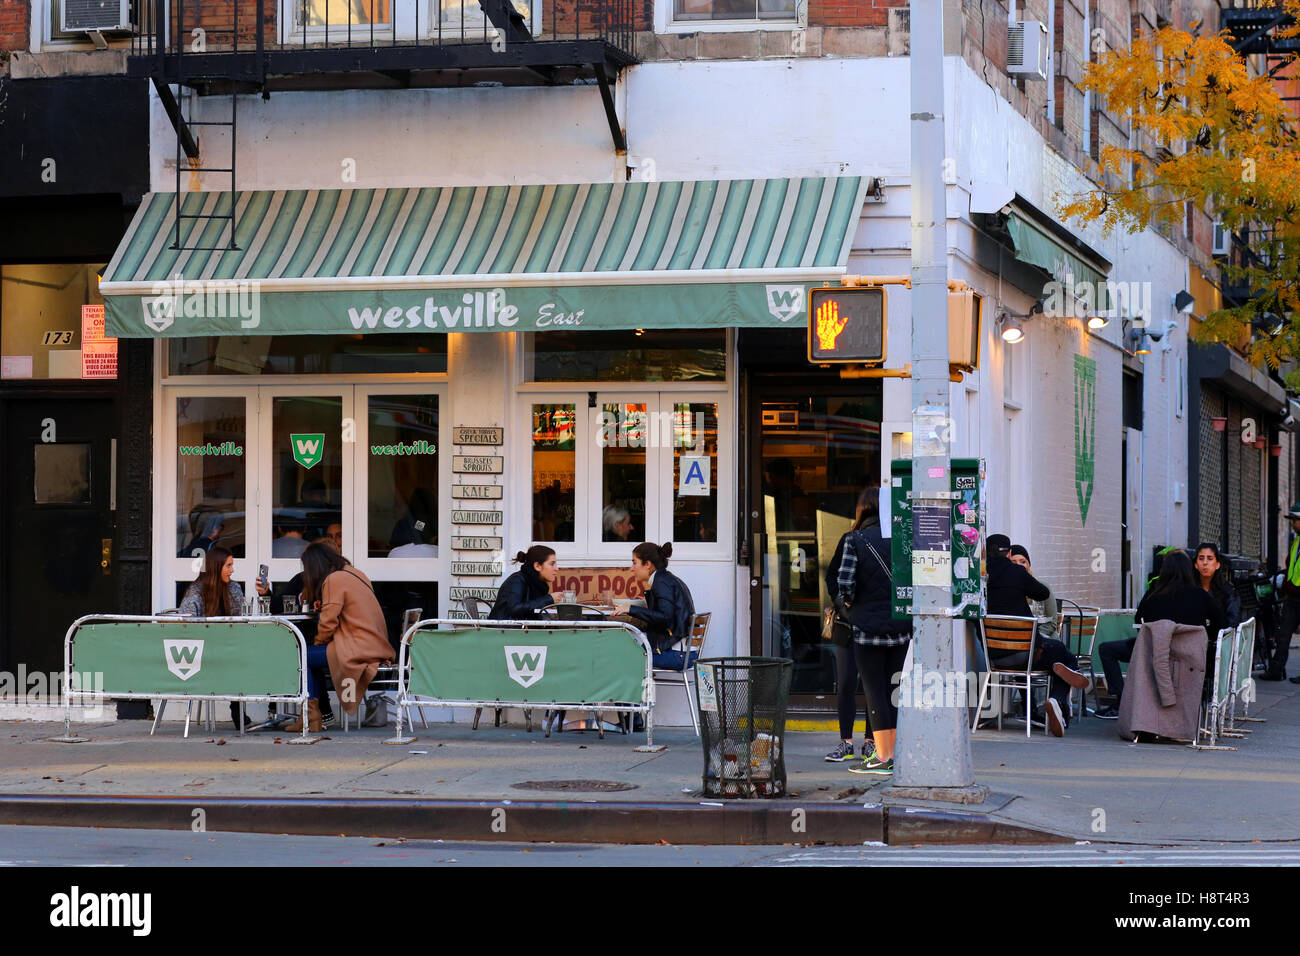 Westville Ost, 173 Avenue A, New York, NY. aussen Verkaufsplattform für ein Lokal und Straßencafé im East Village Viertel von Manhattan. Stockfoto